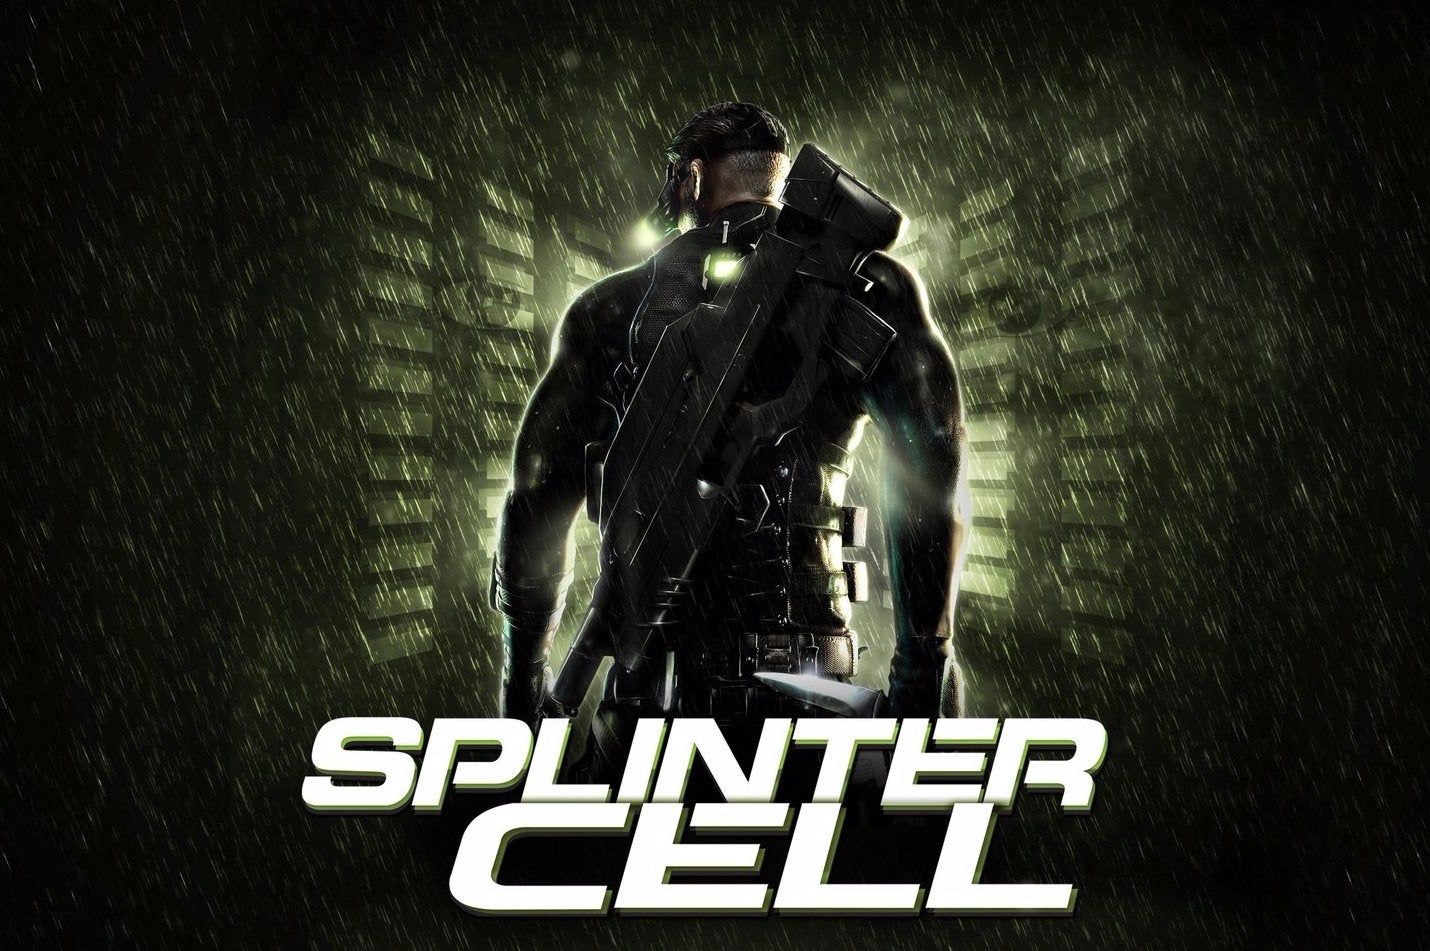 Immagine di Splinter Cell è scaricabile gratuitamente su PC da adesso e per un periodo limitato